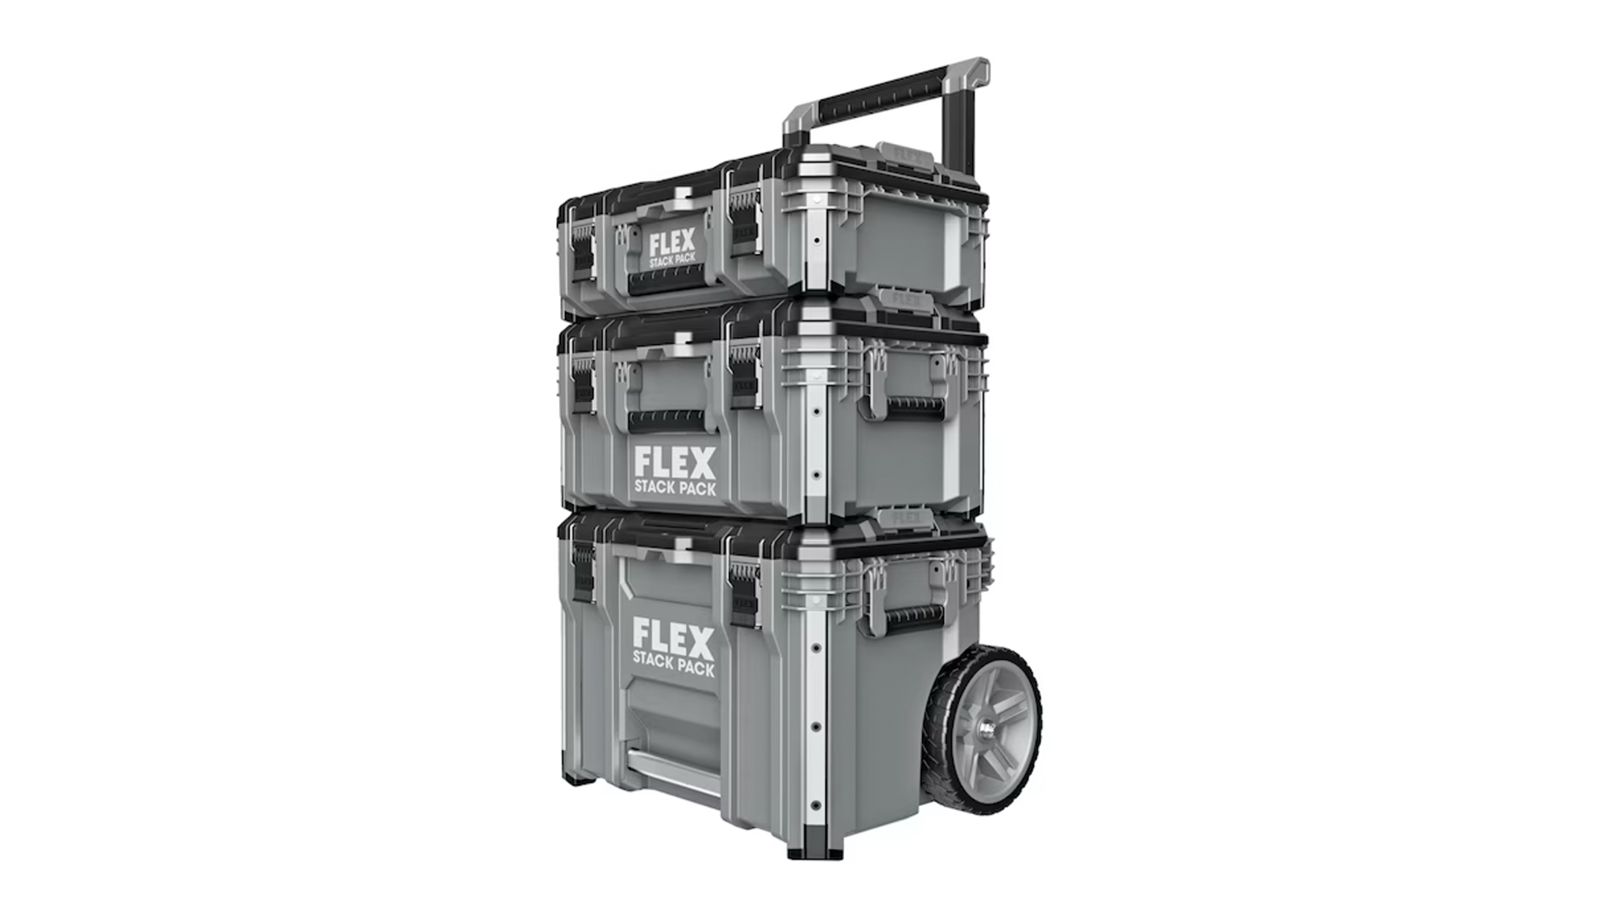 FLEX Stack Pack Storage and Organization 